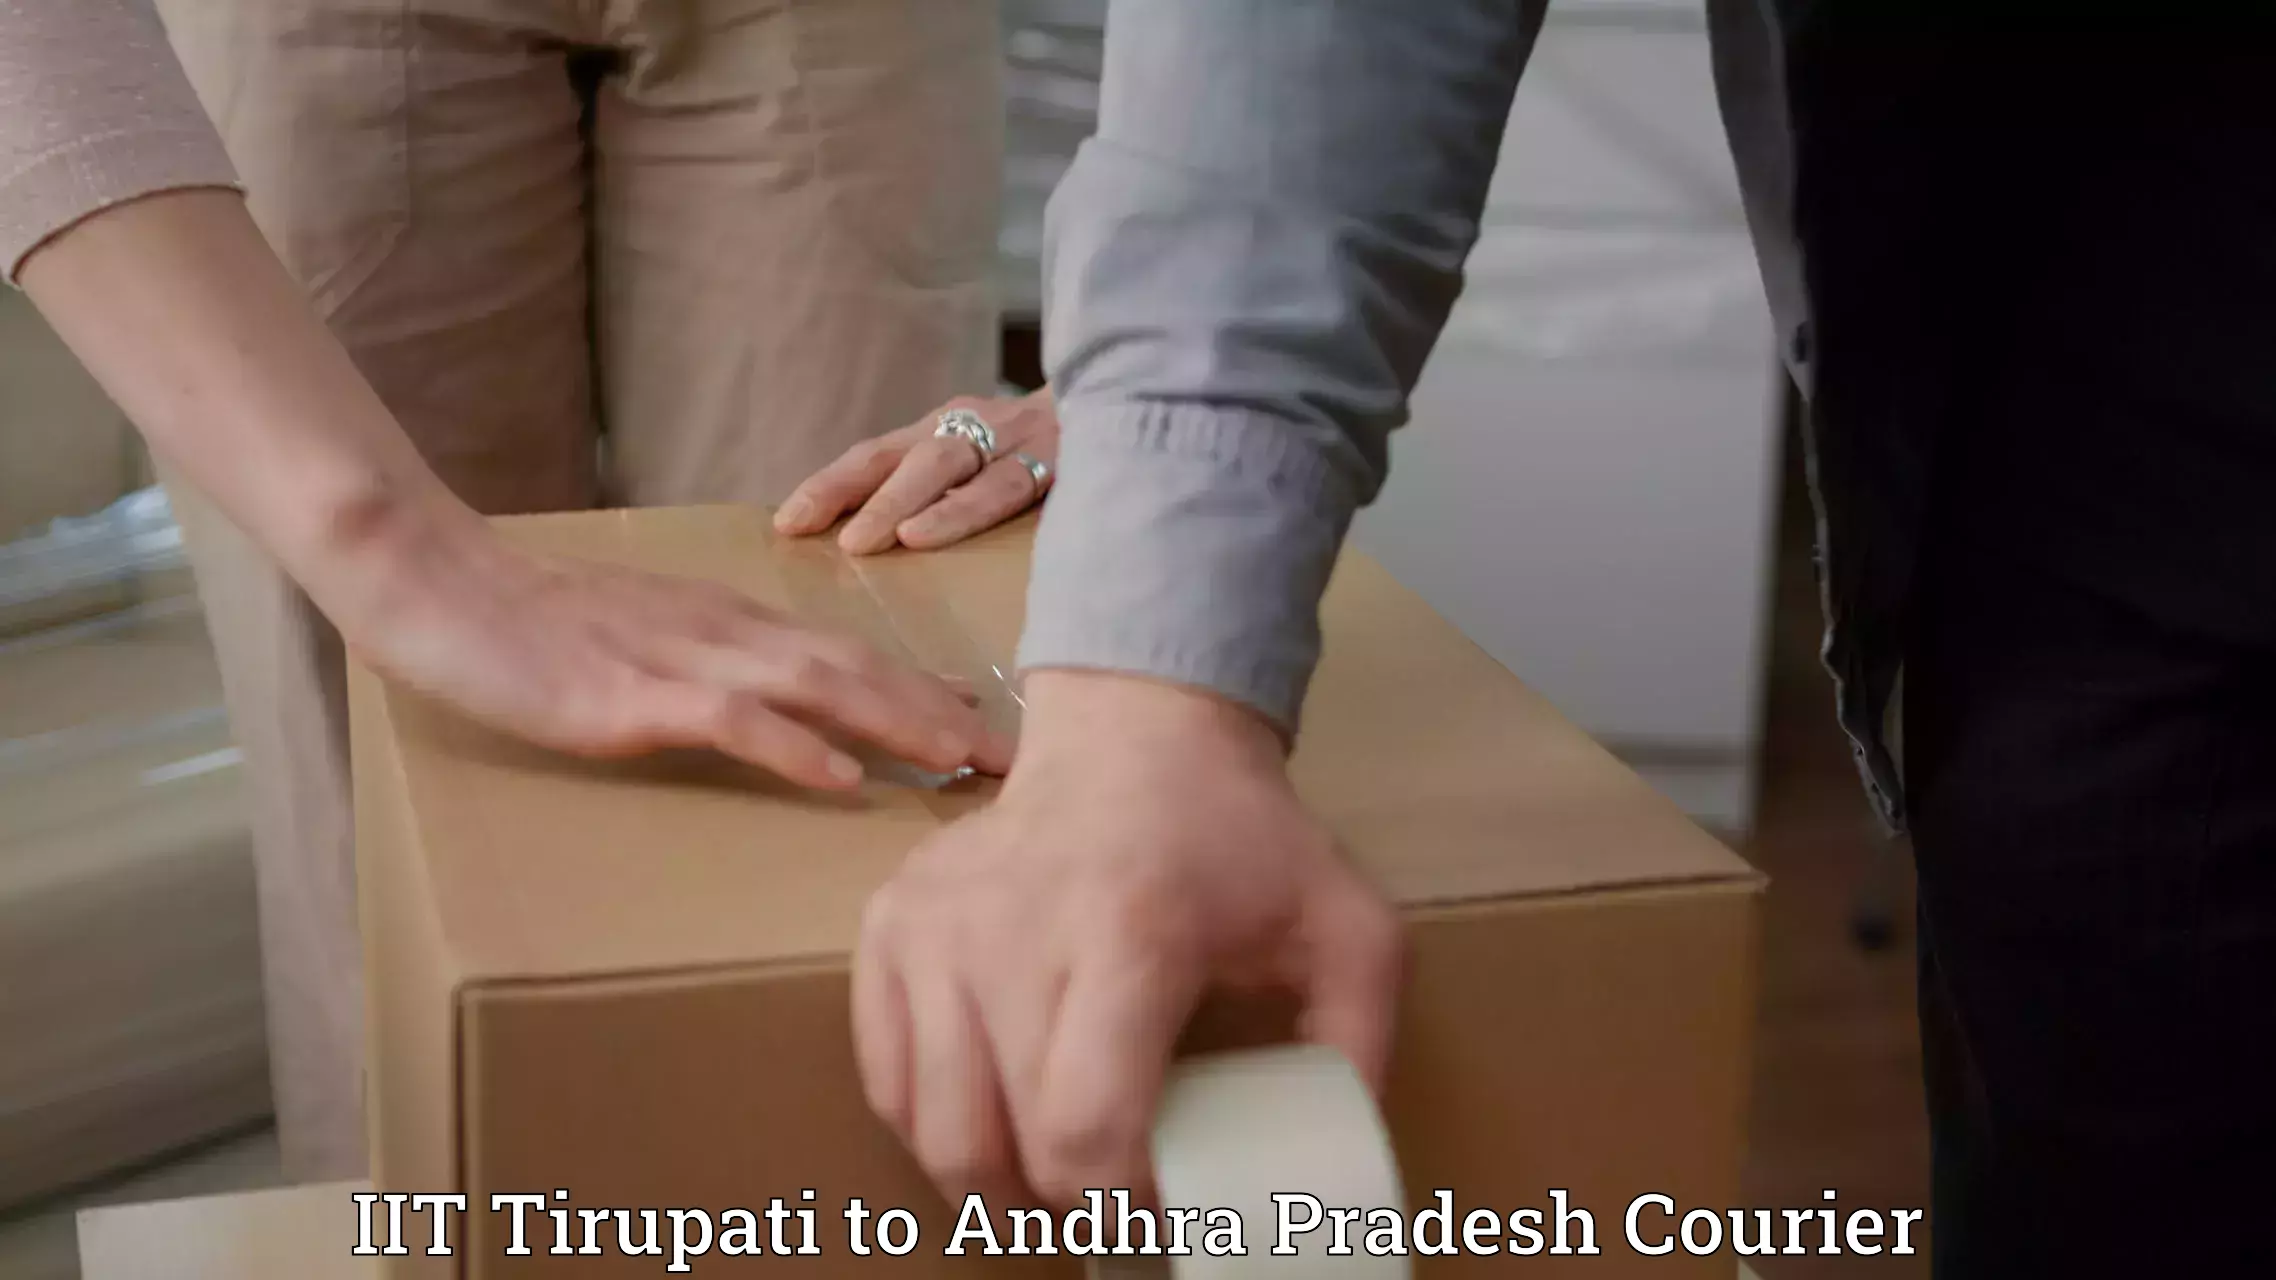 Express delivery solutions IIT Tirupati to Mulakalacheruvu